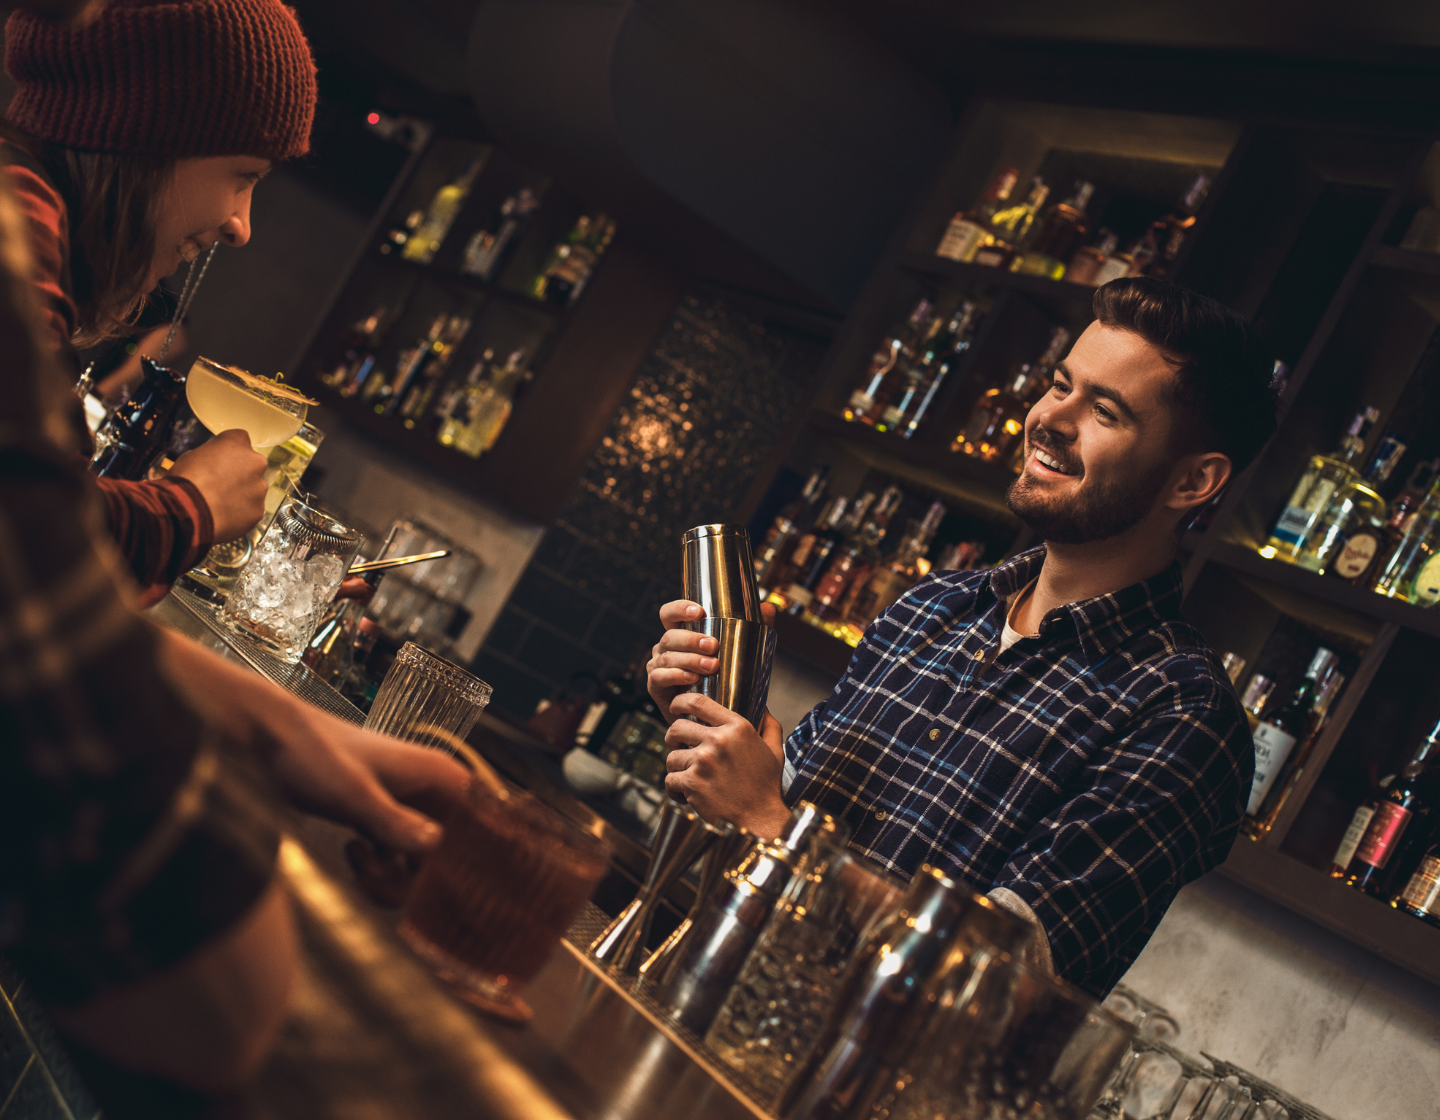 Bartender smiling behind the bar